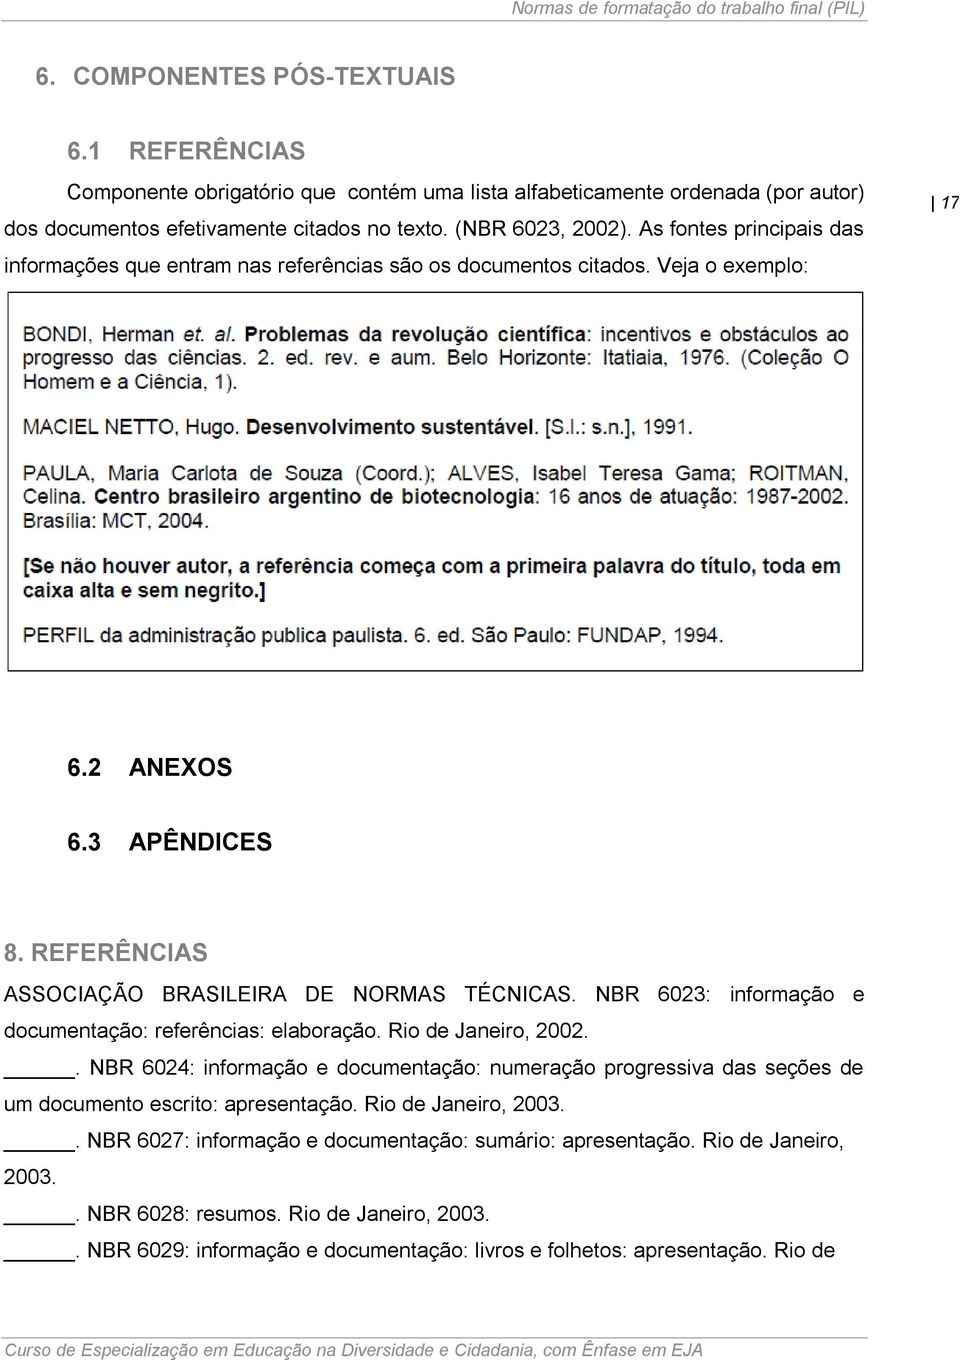 NBR 6023: informação e documentação: referências: elaboração. Rio de Janeiro, 2002.. NBR 6024: informação e documentação: numeração progressiva das seções de um documento escrito: apresentação.